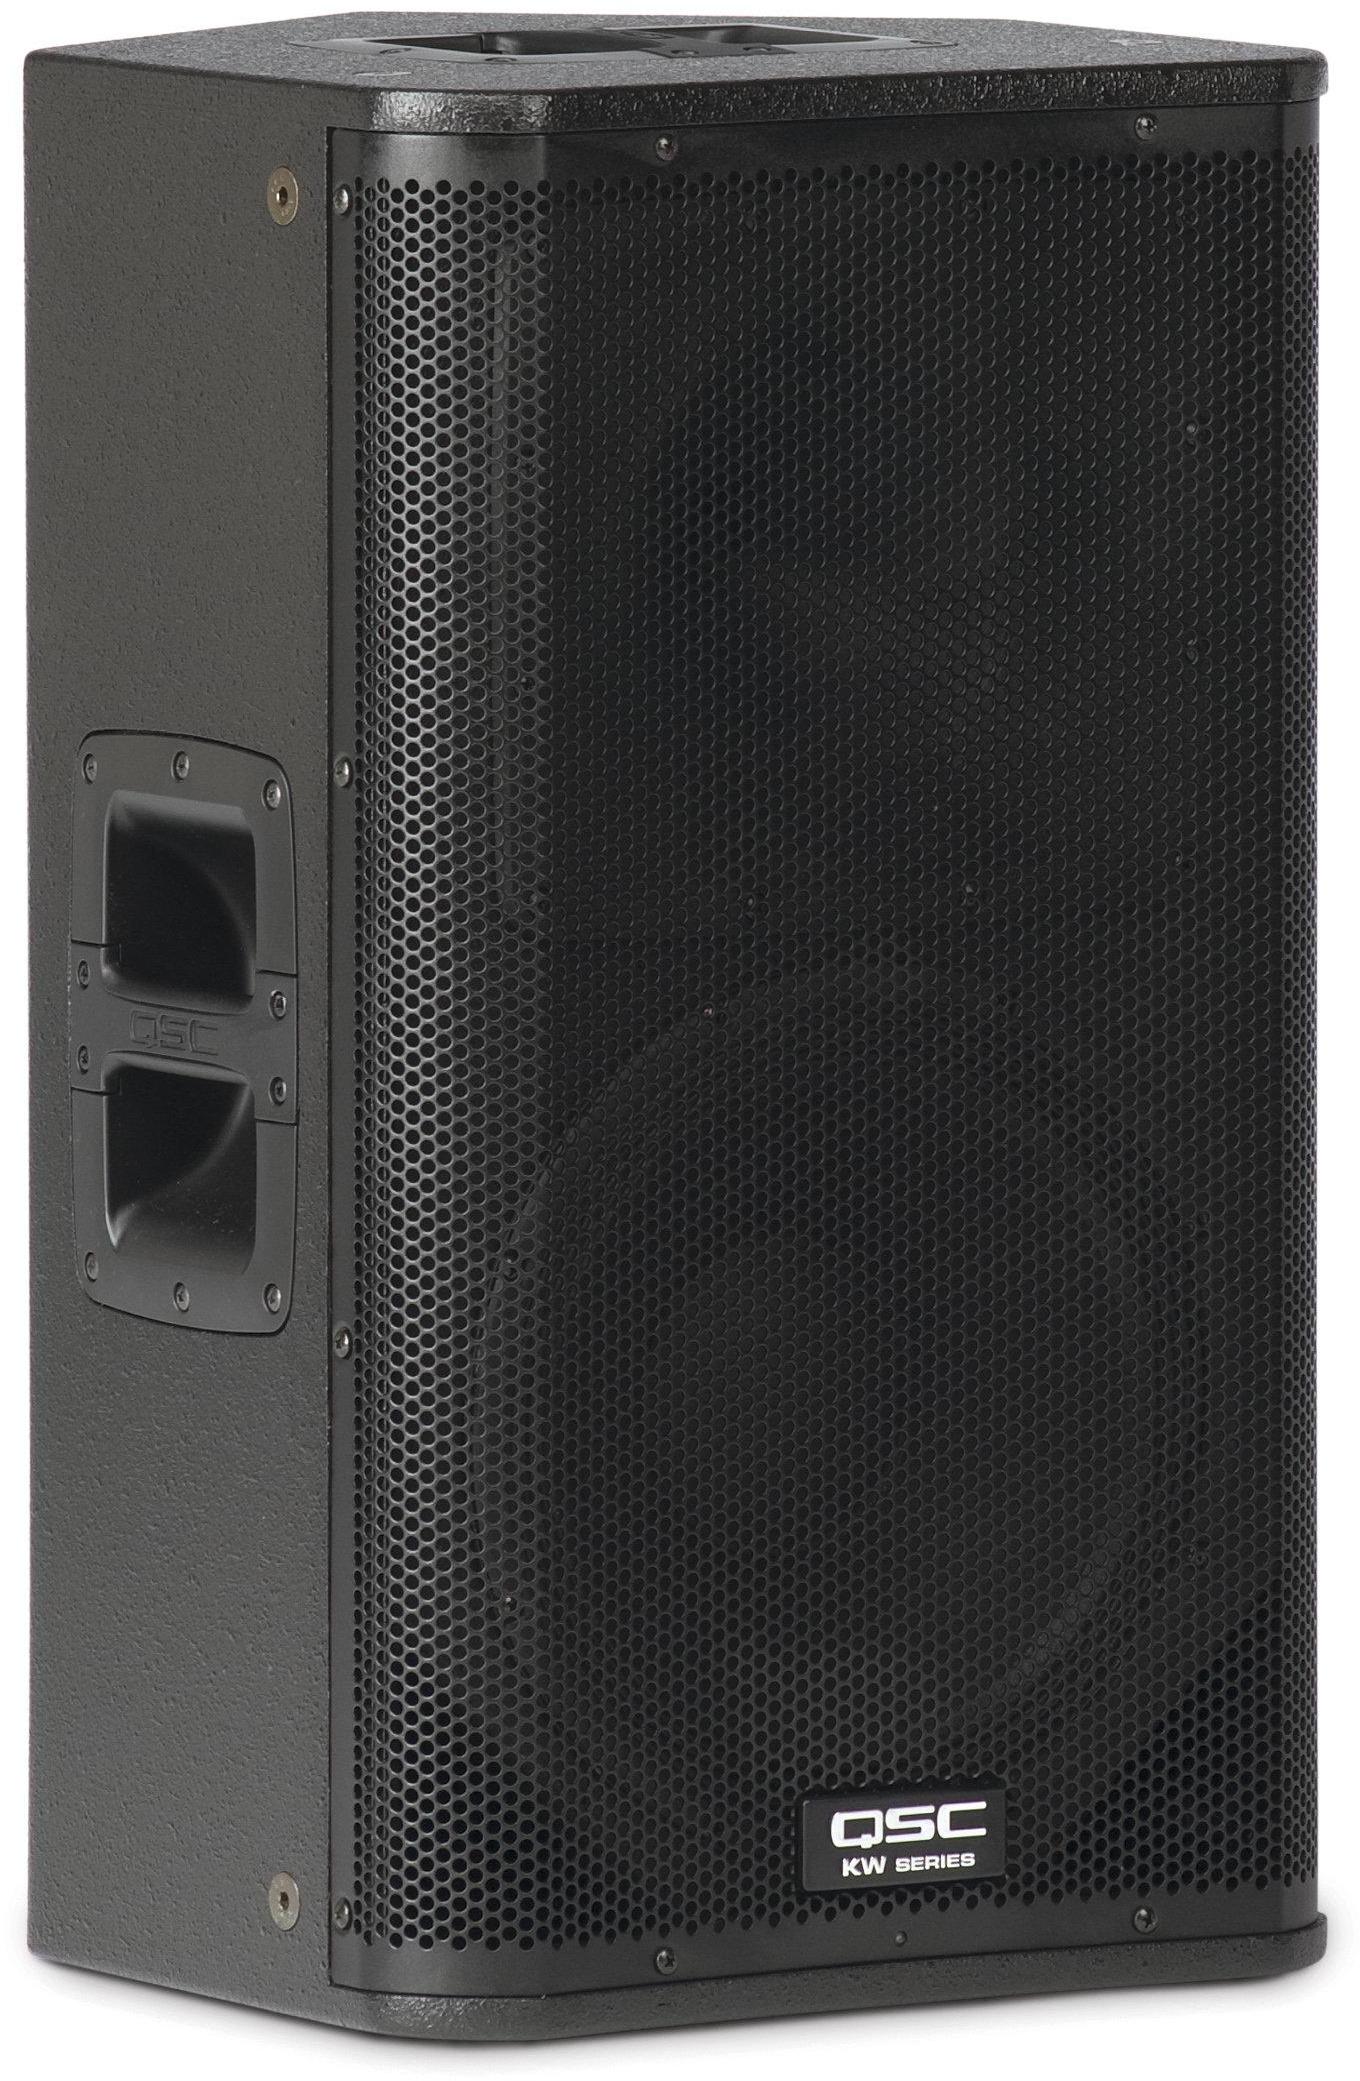 Active full-range speaker Qsc KW122